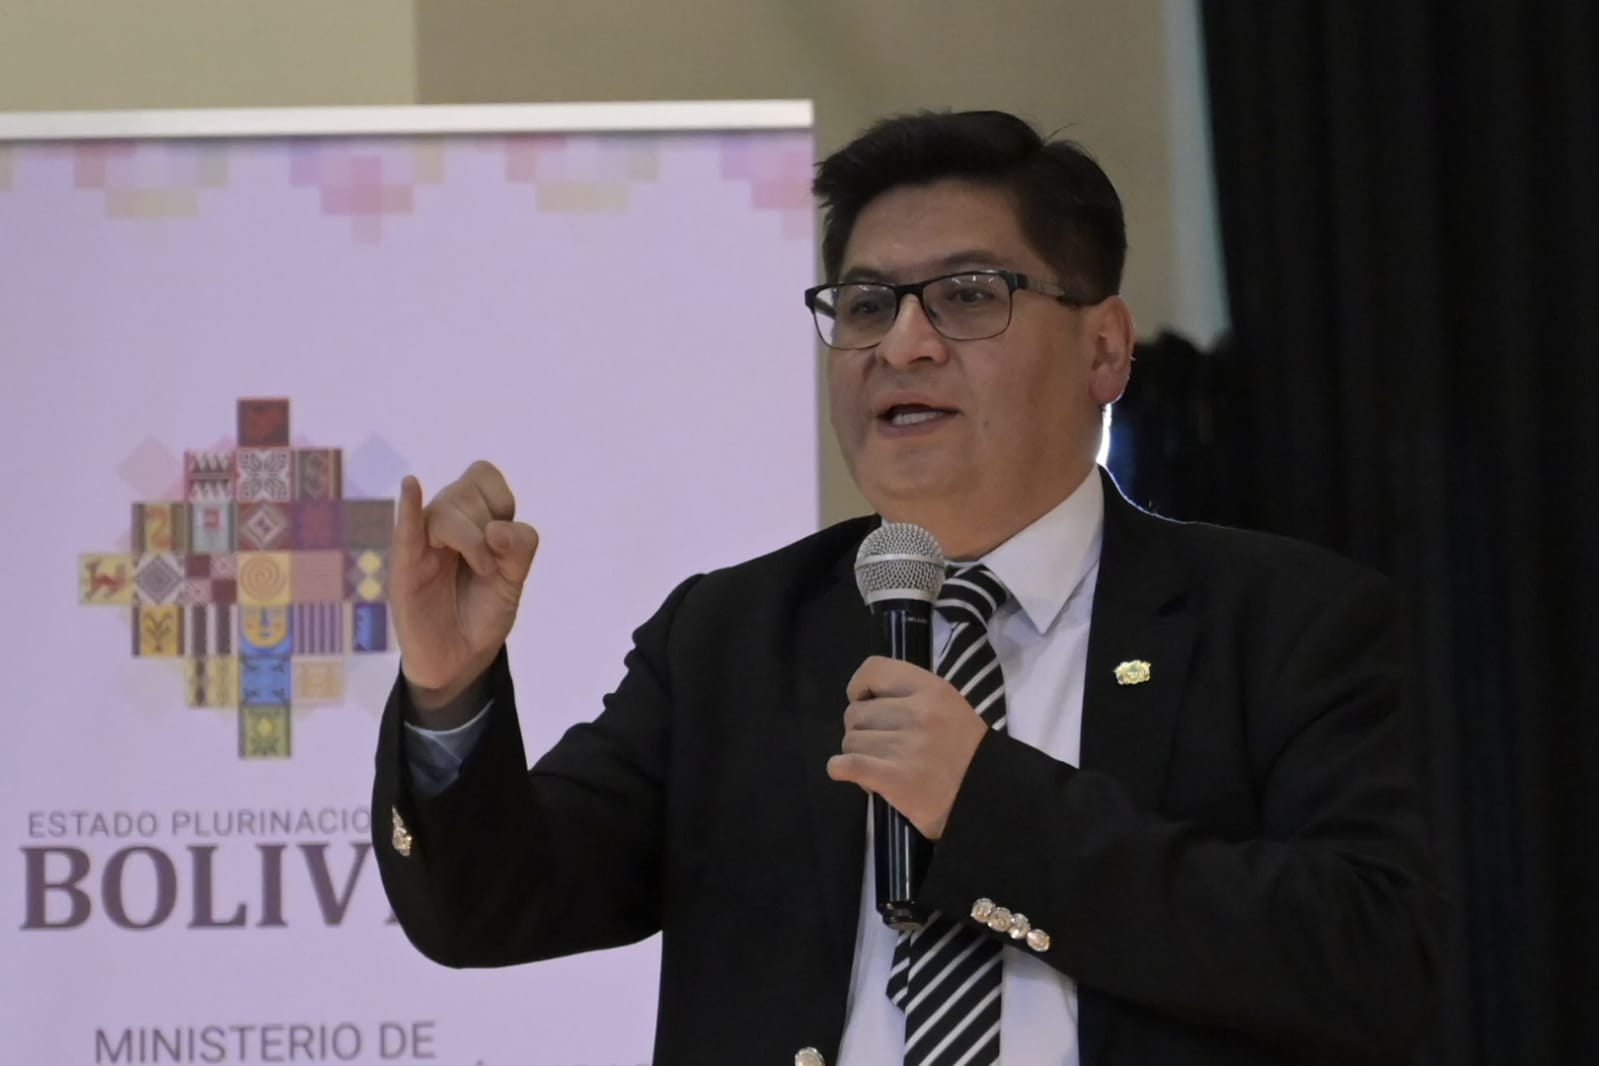 El Ministro de Economía destaca las fortalezas del Modelo en el coloquio de la Universidad de Cochabamba